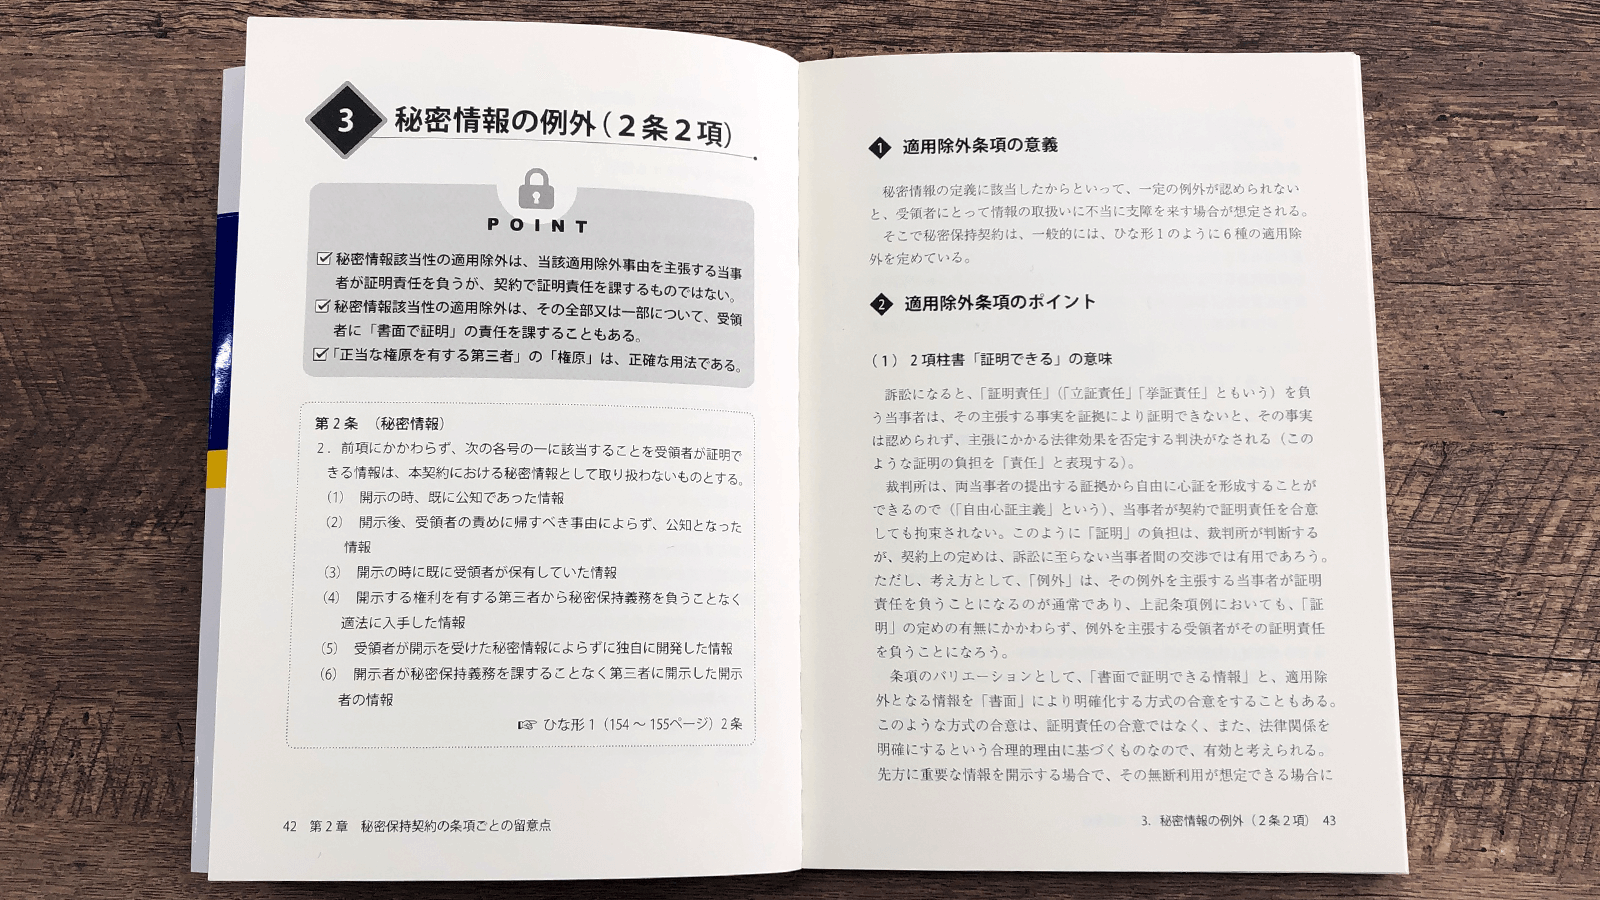 出澤総合法律事務所『実践!! 秘密保持契約書審査の実務』P42-43